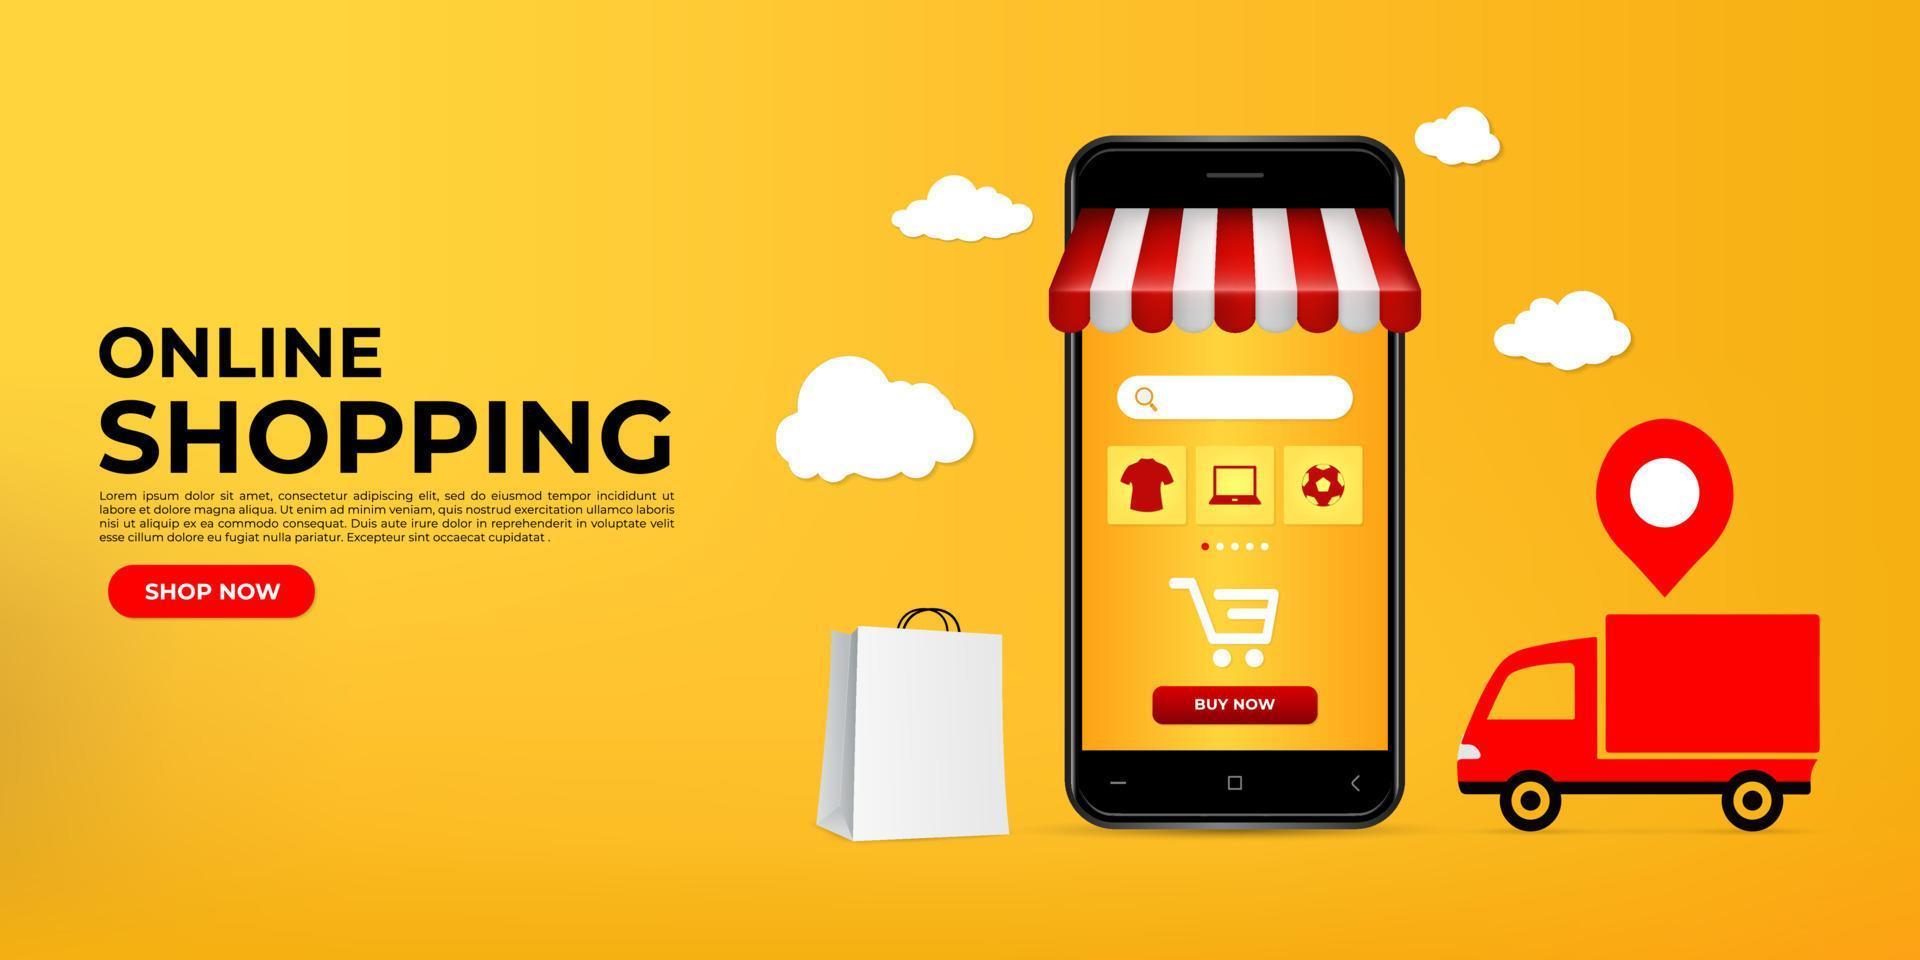 realistisch winkelen online ontwerp met smartphone. online winkelen op websites of mobiele applicatieconcepten die perfect zijn voor marketing, promotie en digitale marketing. vector